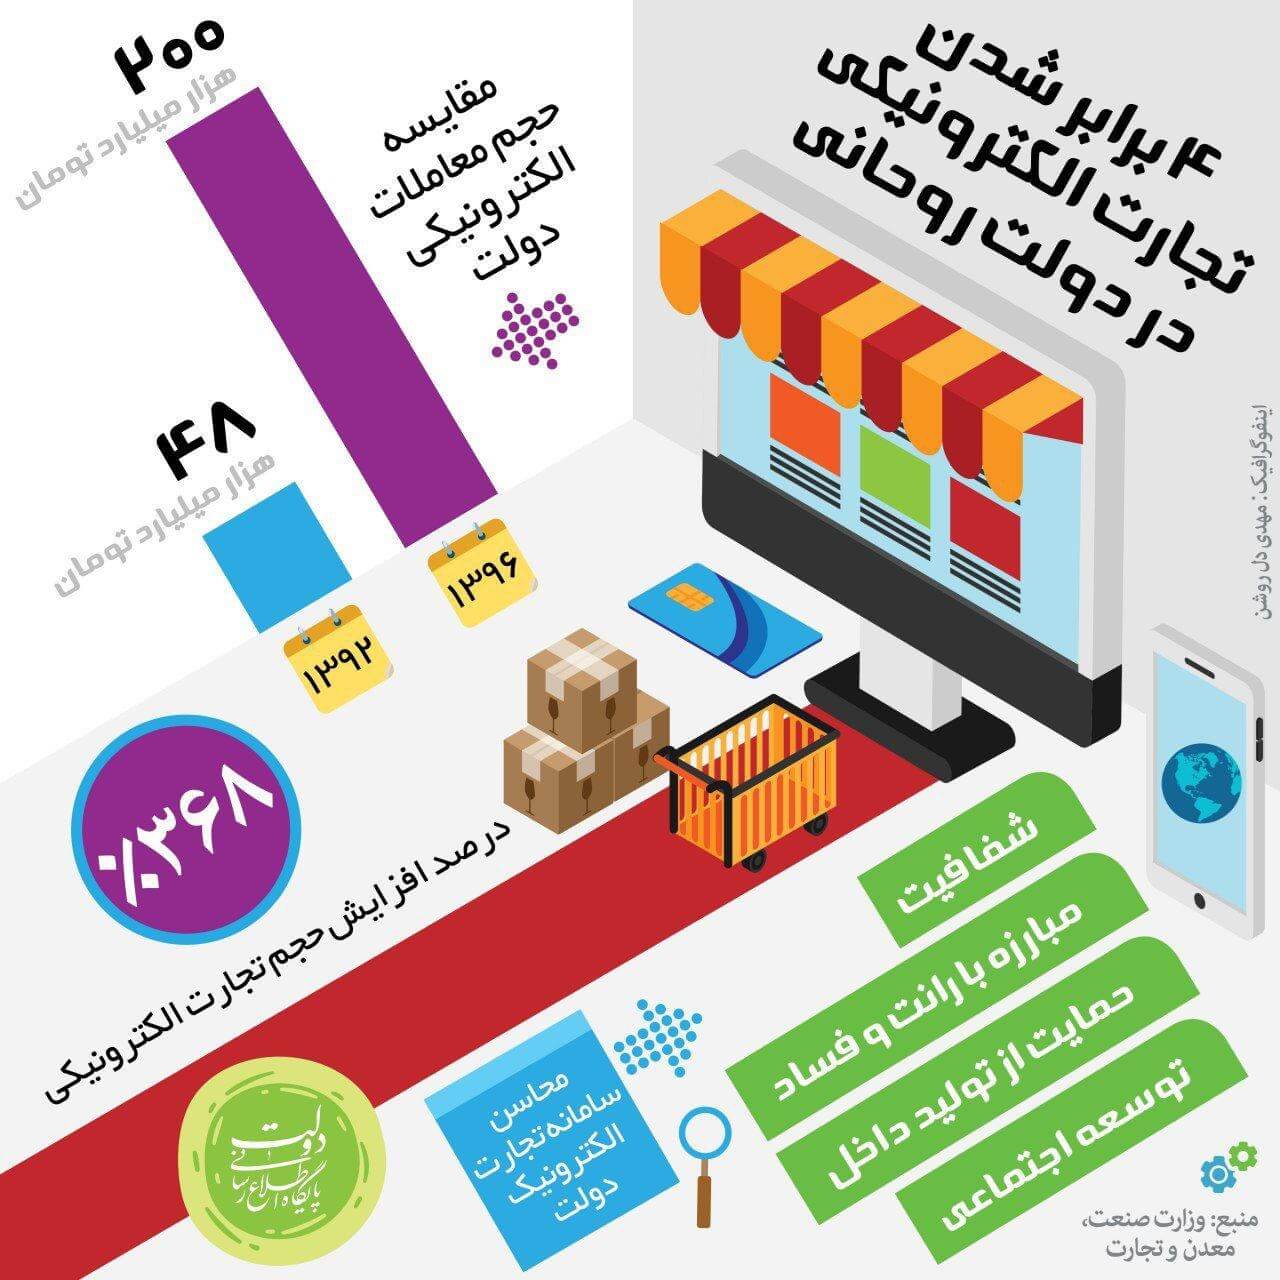 اینفوگرافیک افزایش تجارت الکترونیکی در دولت روحانی